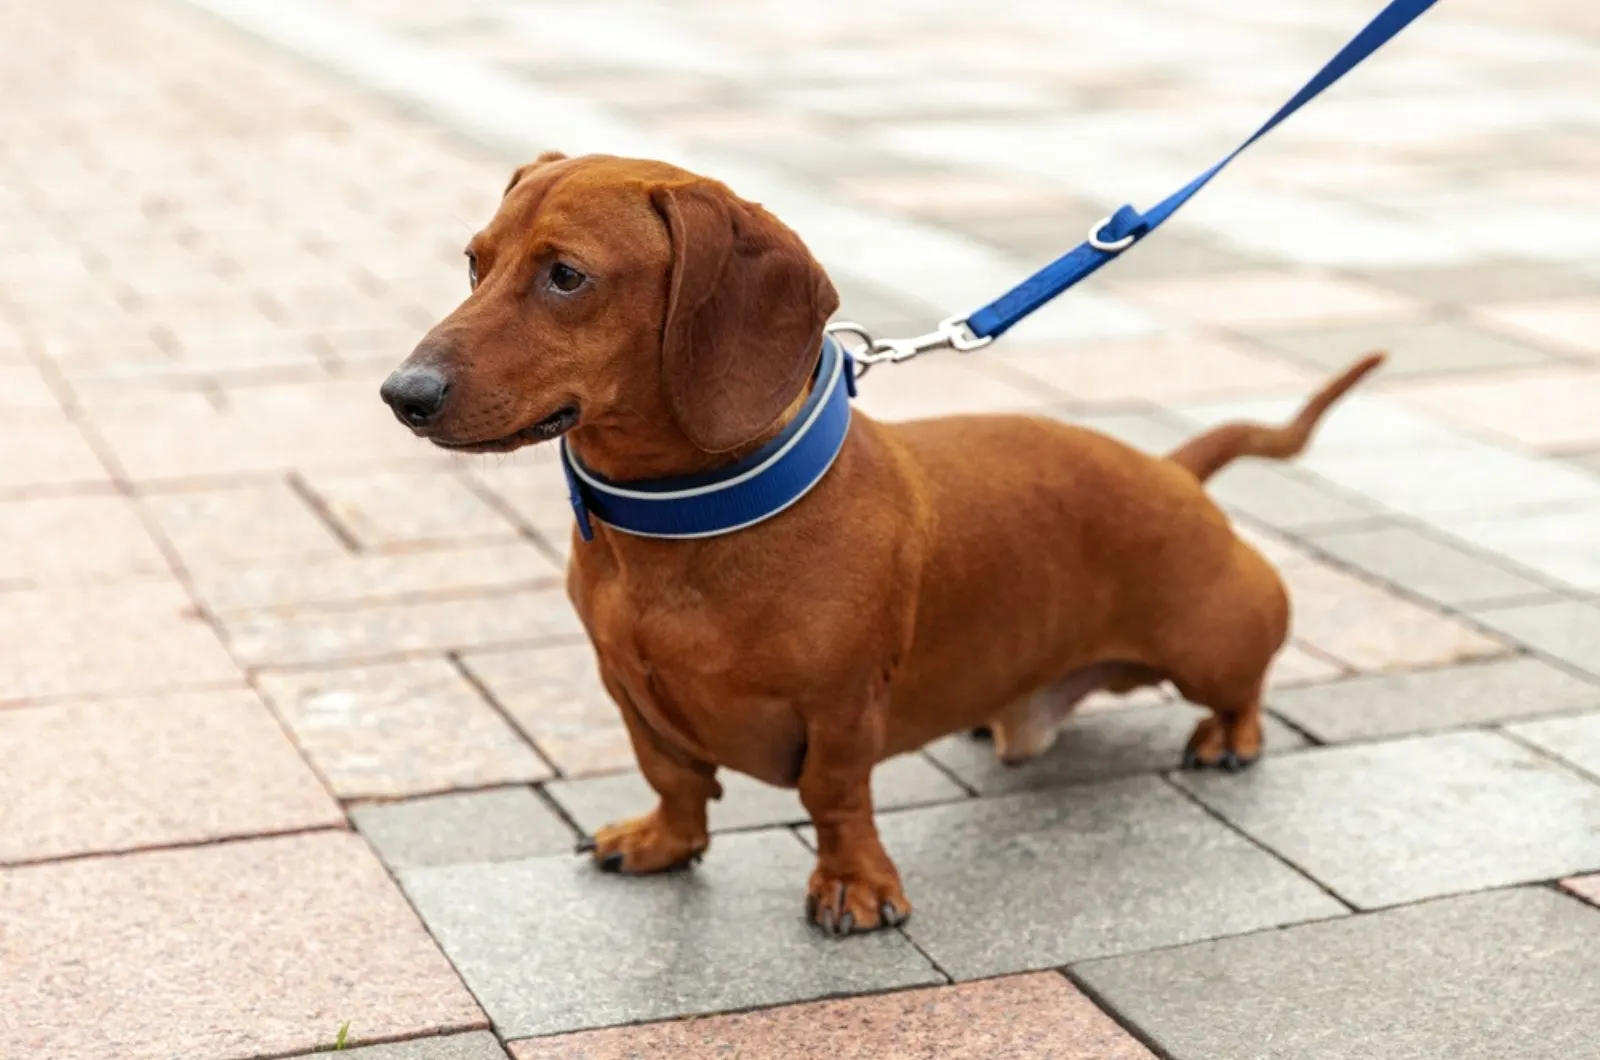 dachshund dog with a blue collar